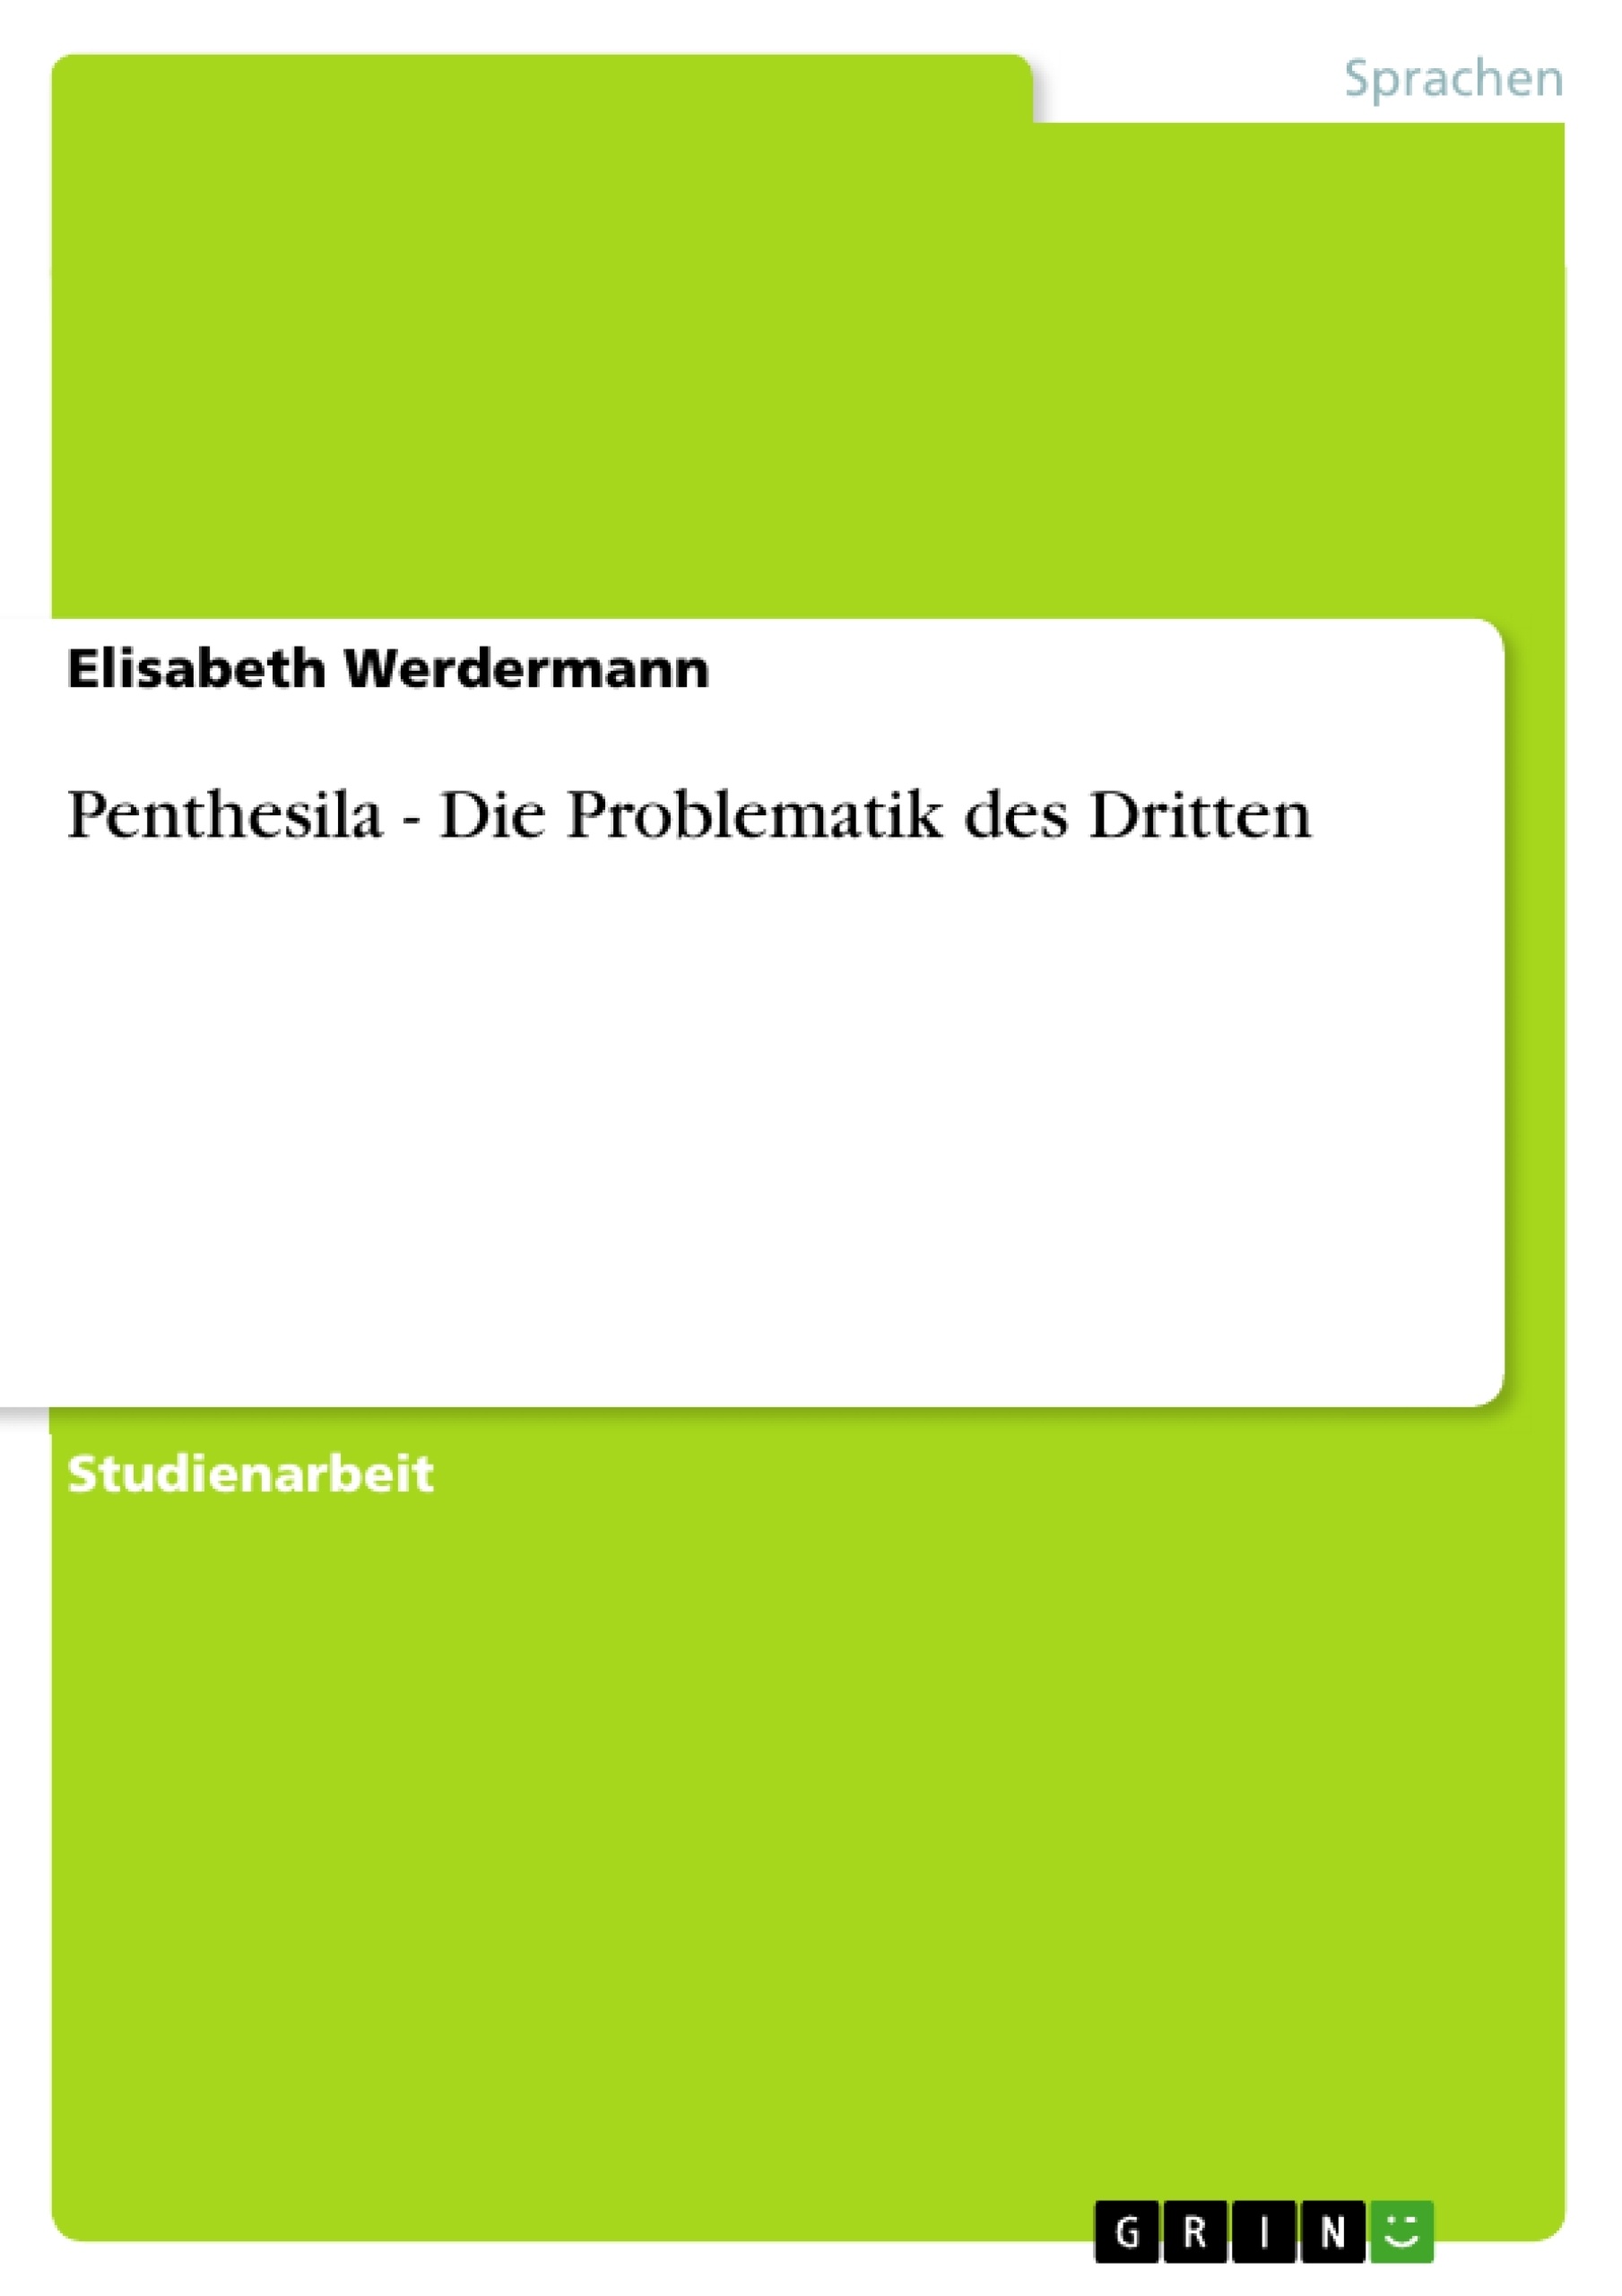 Título: Penthesila - Die Problematik des Dritten